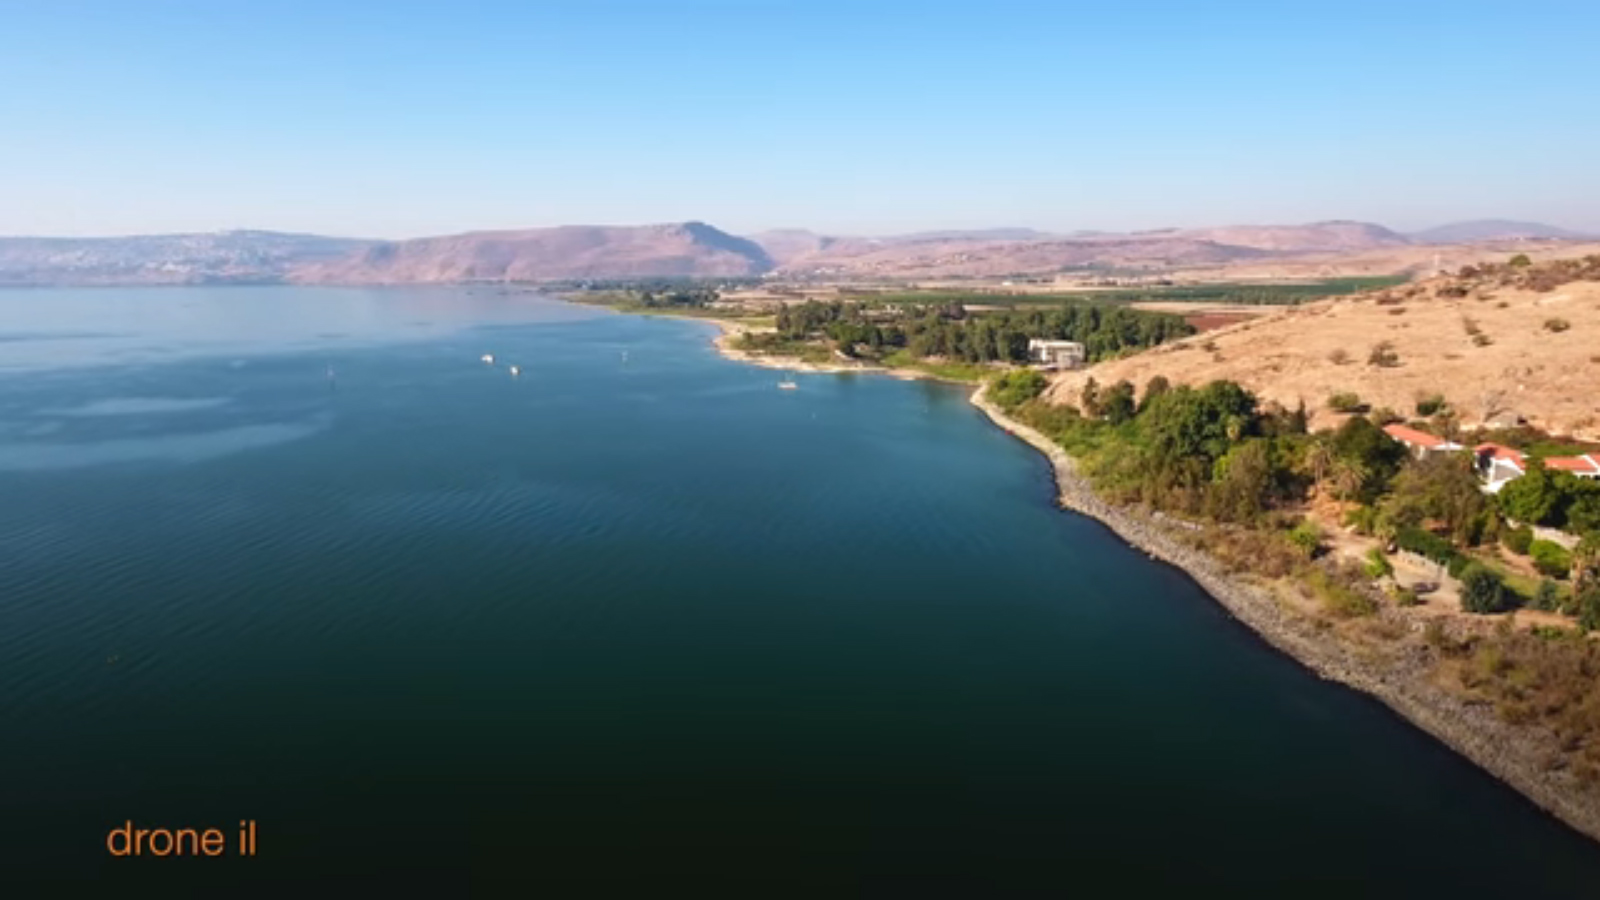 Galilee lake